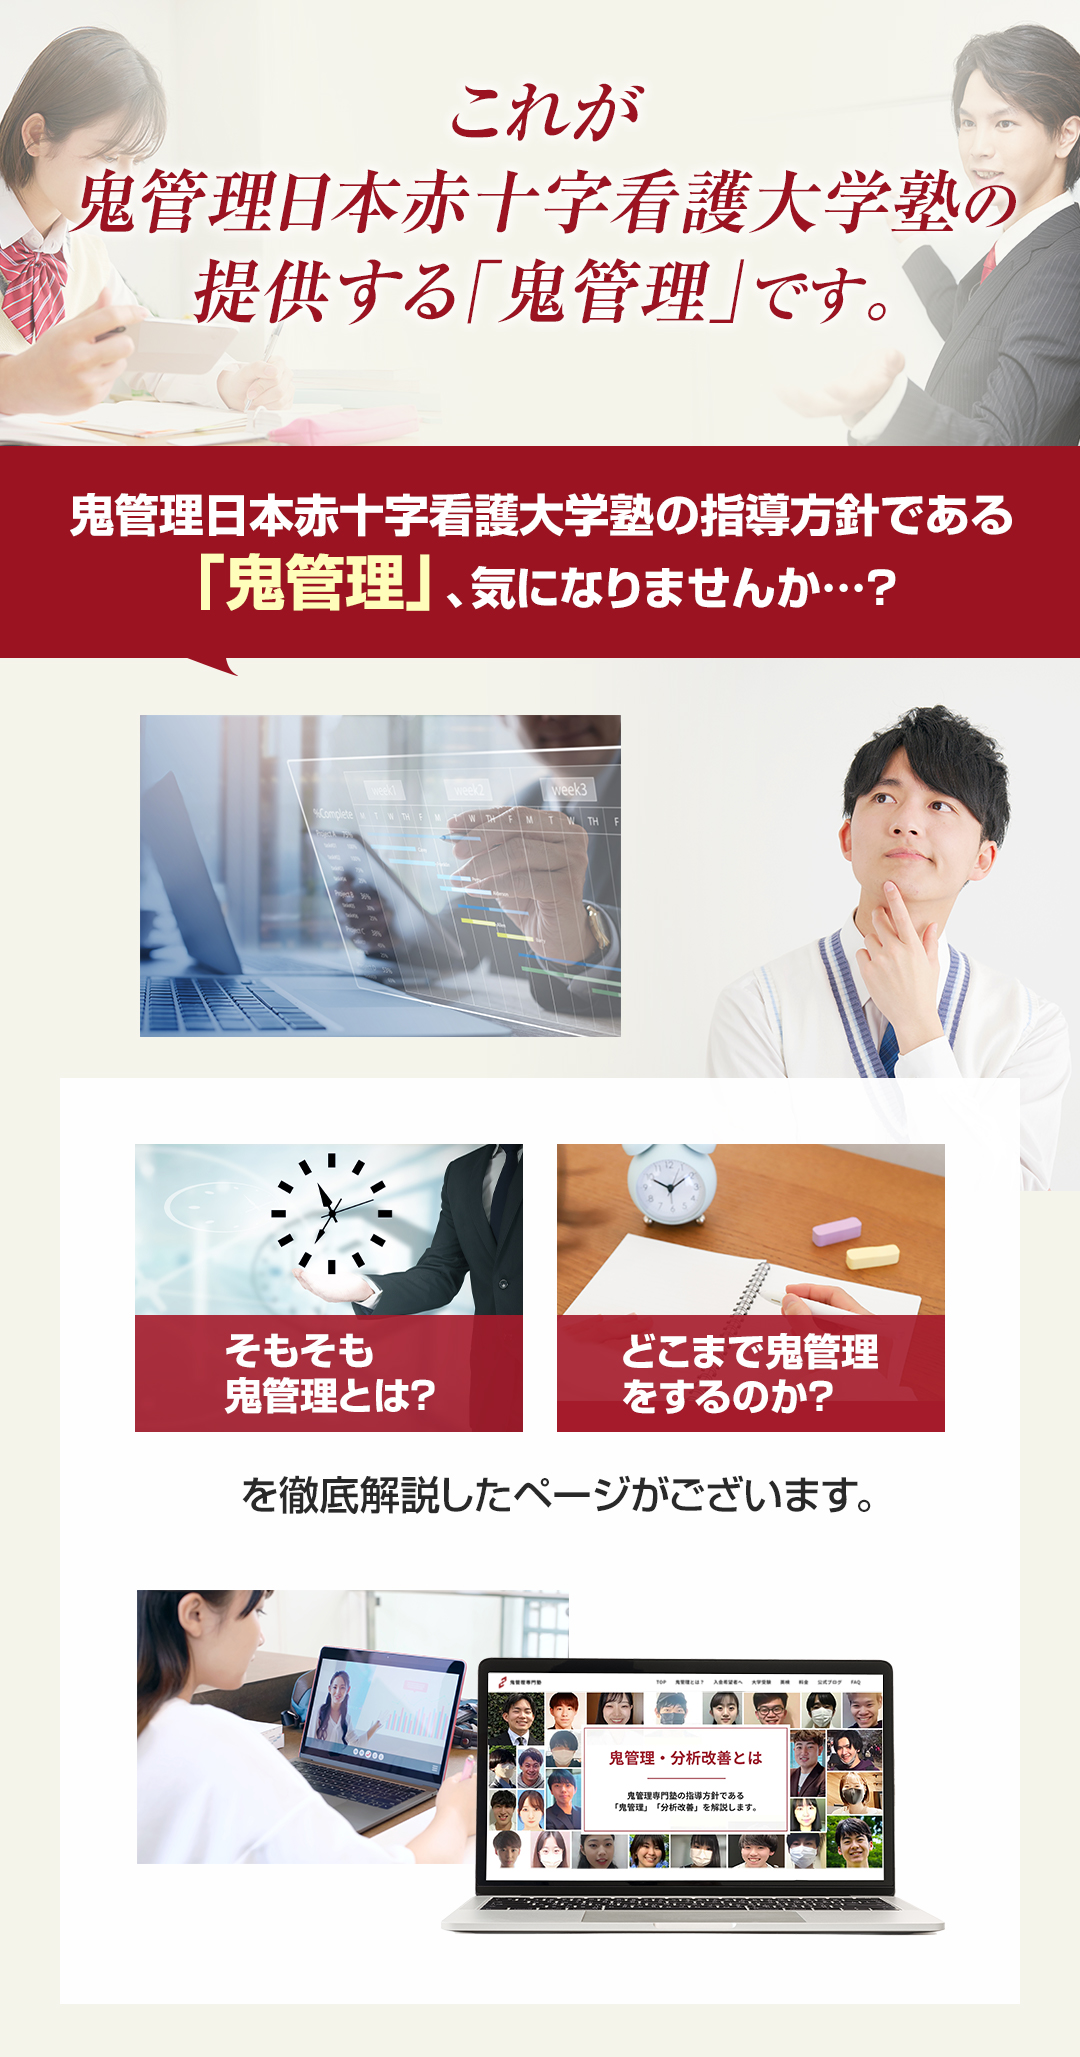 これが鬼管理日本赤十字看護大学塾の提供する「鬼管理」です